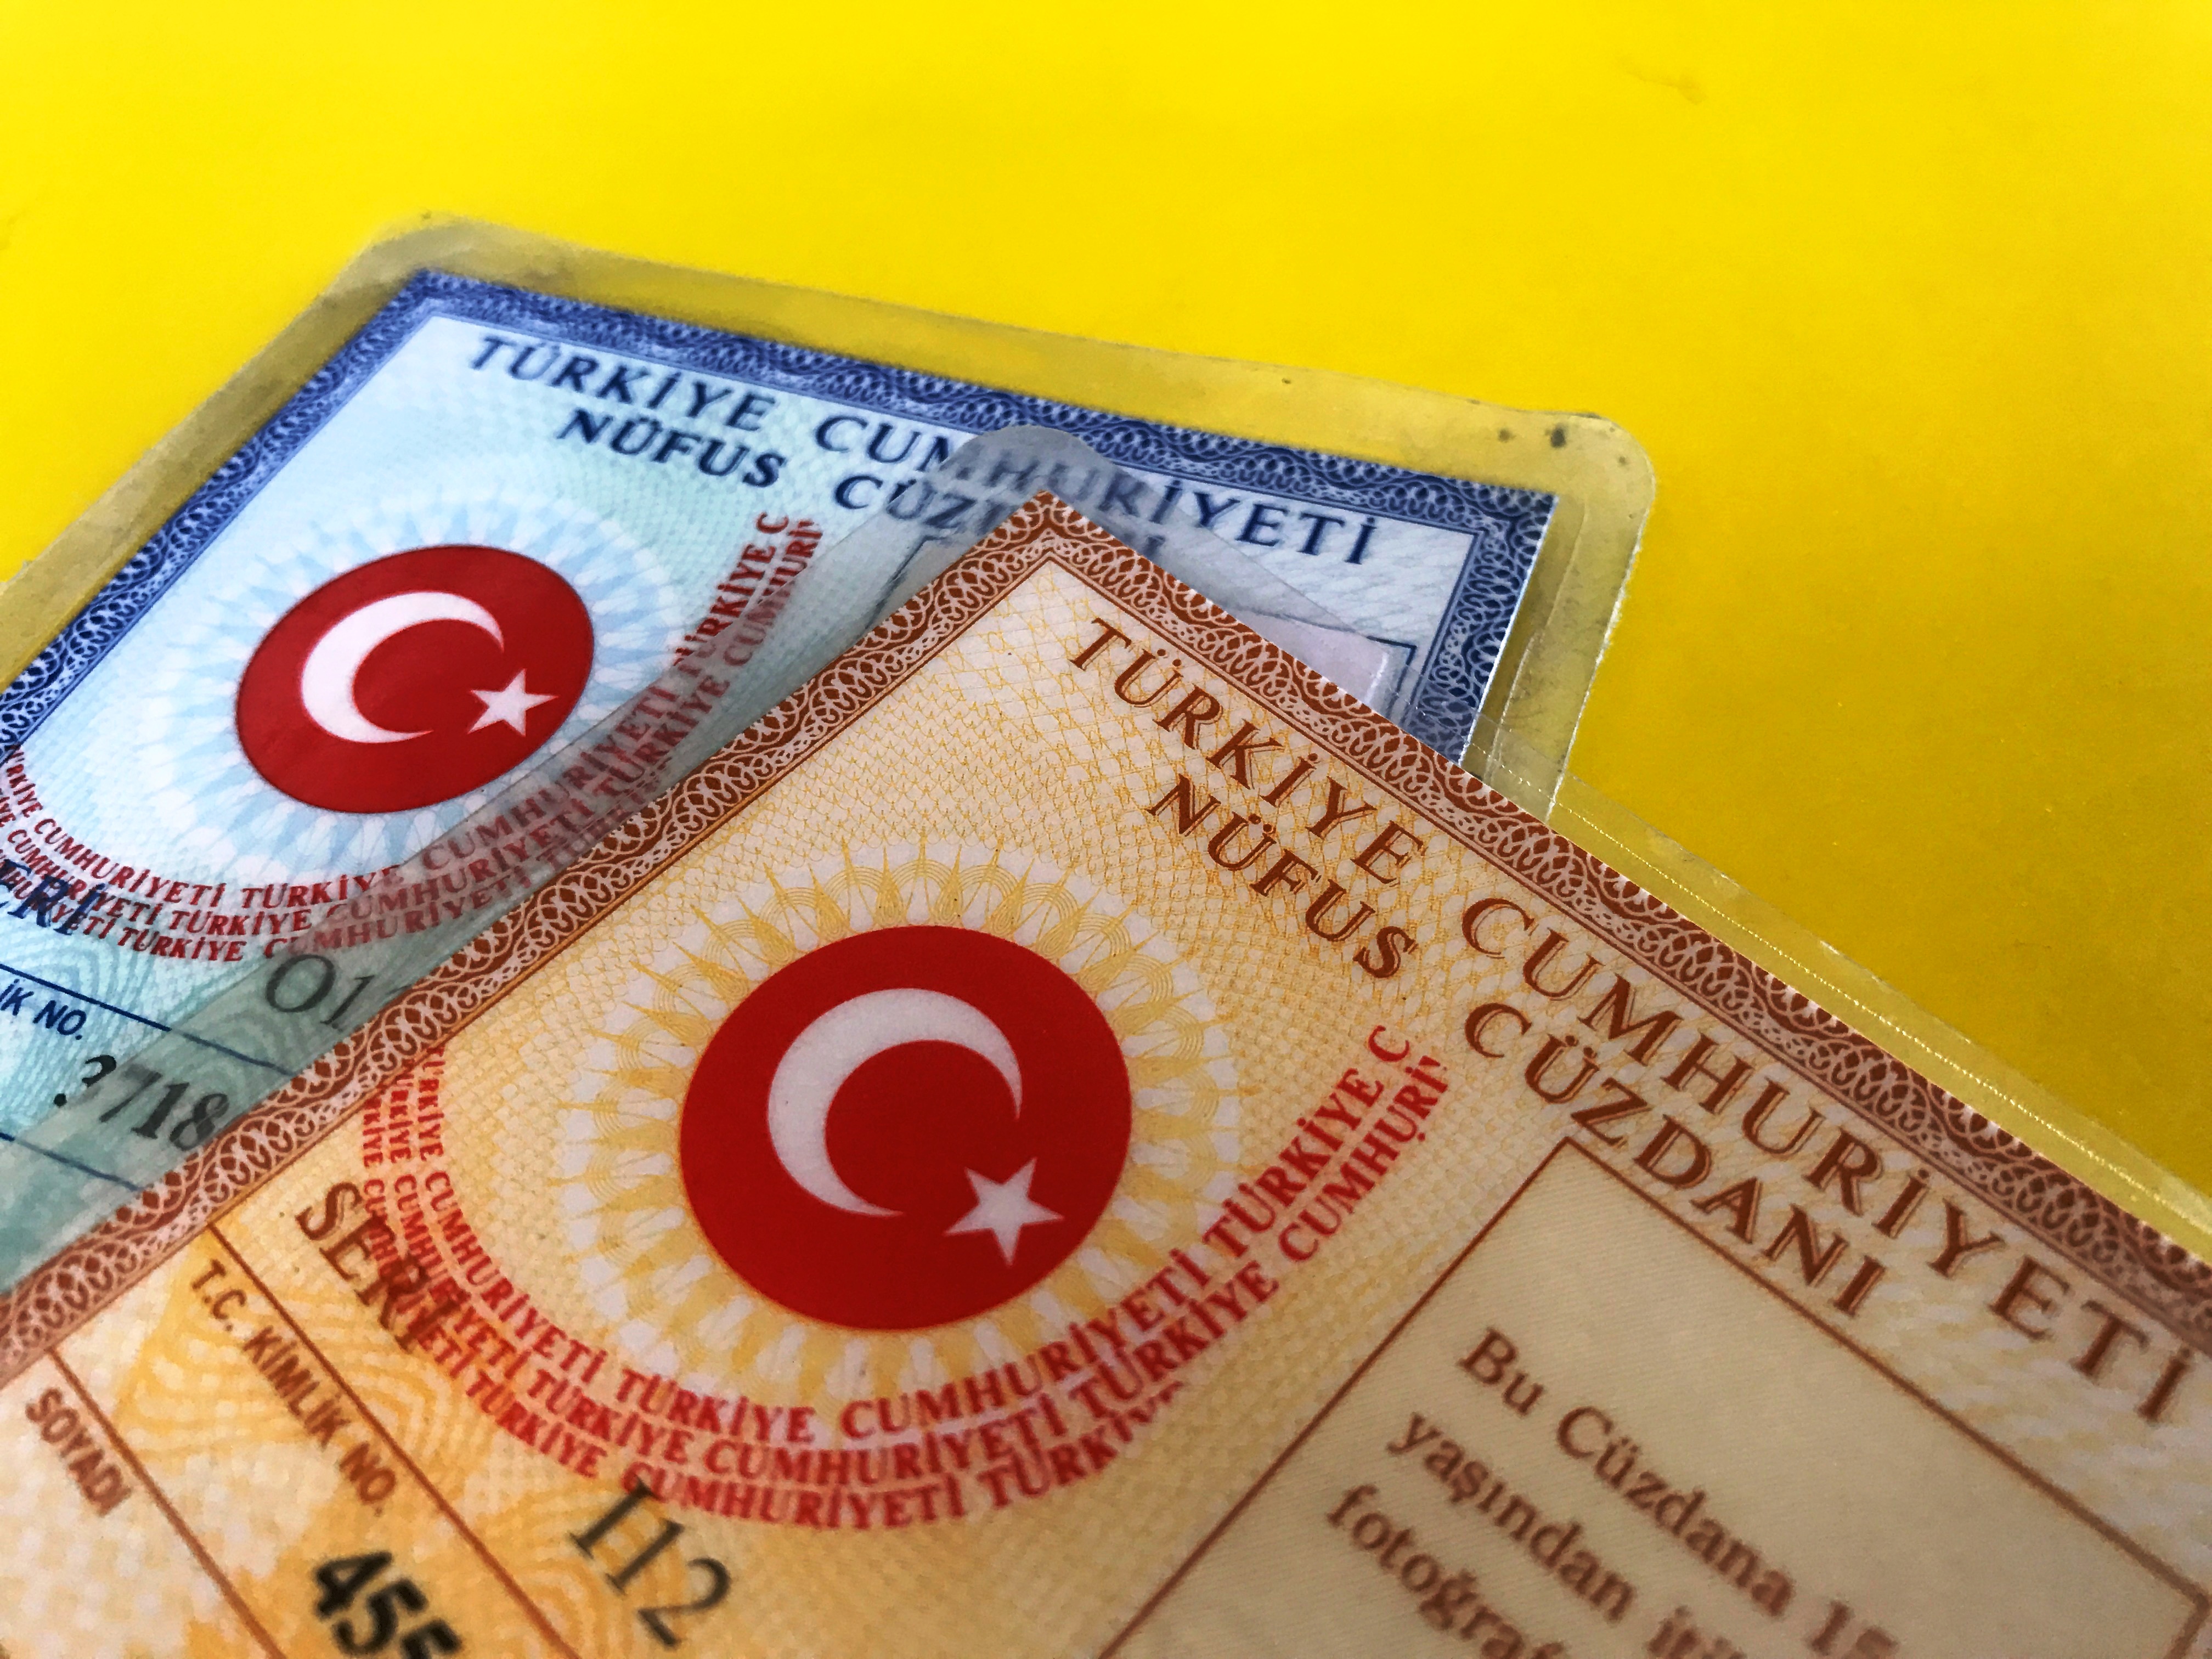   Где получать турецкий идентификационный документ - кимлик?